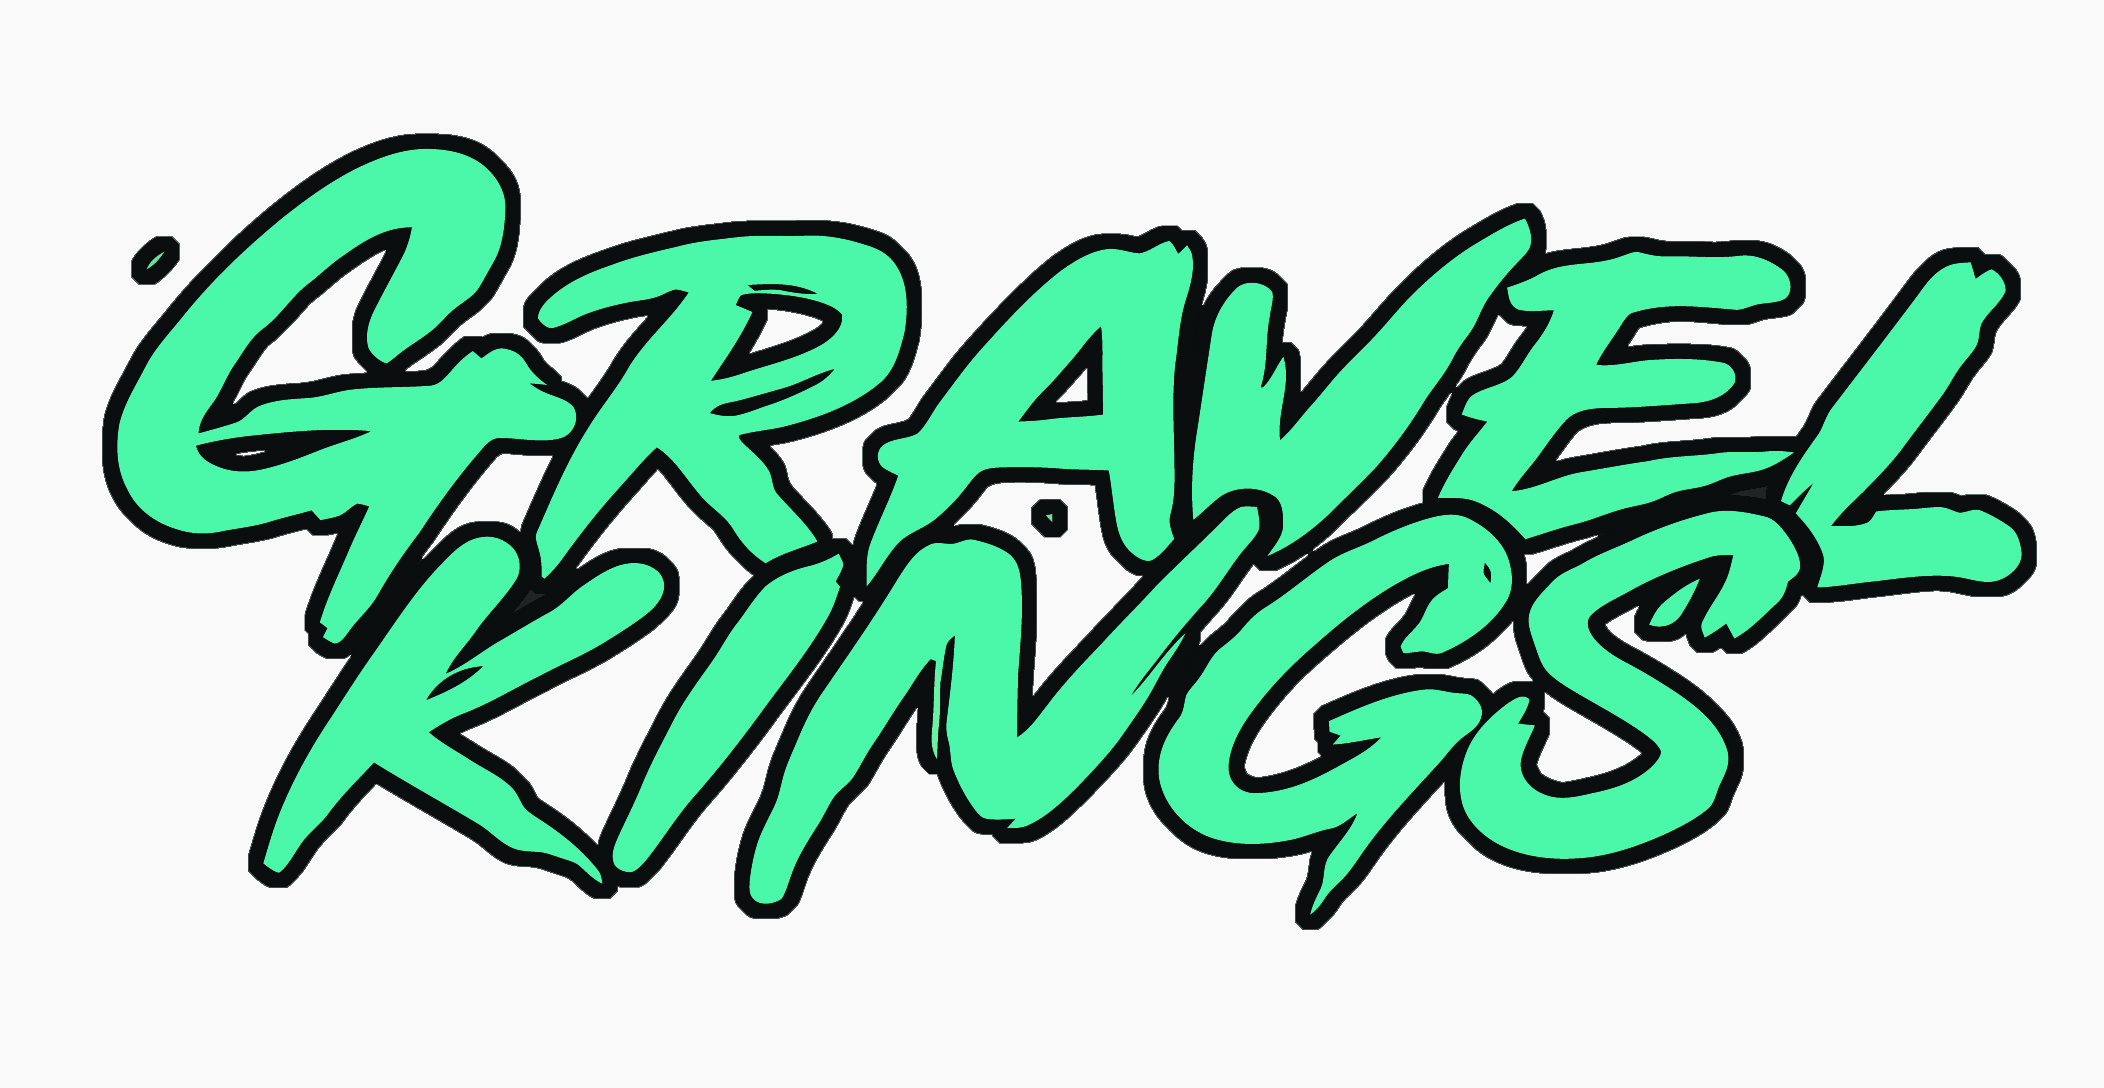 Gravel Kings